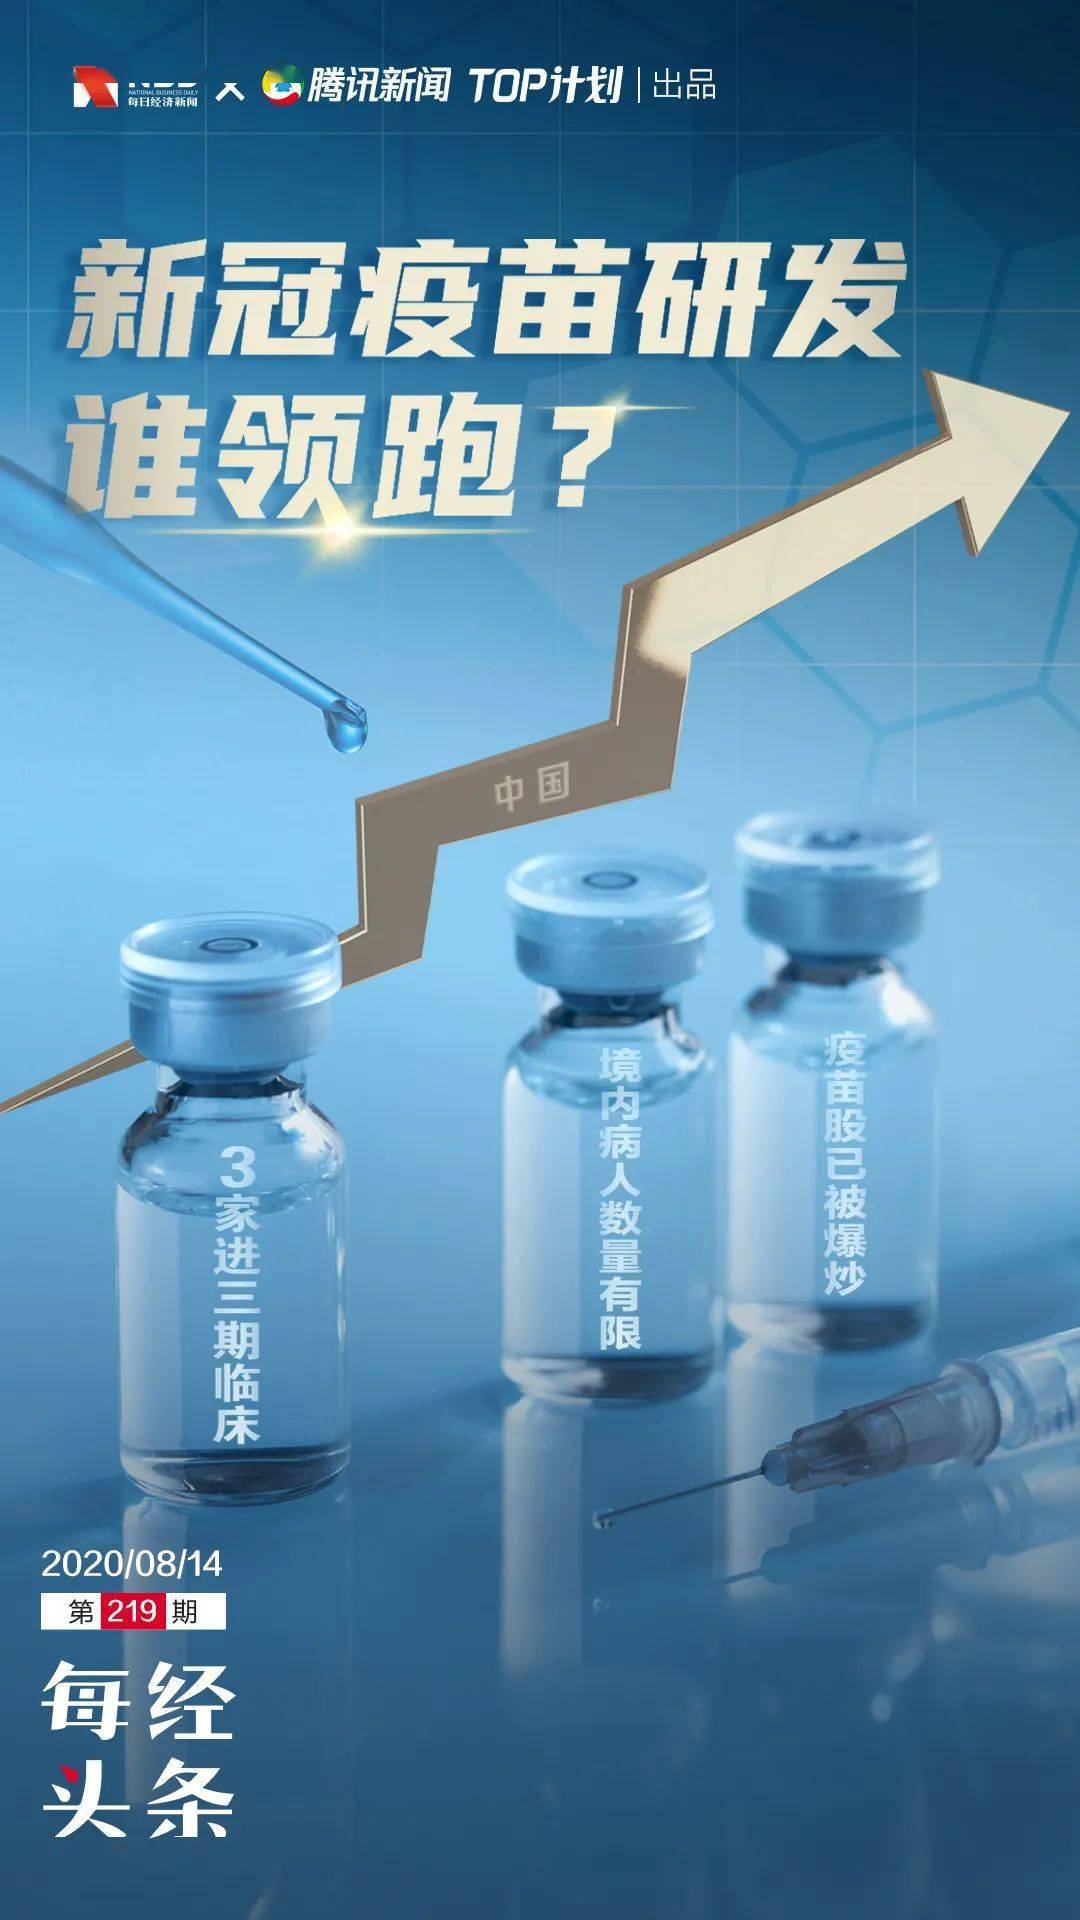 新冠疫苗全球竞备赛:俄罗斯"卫星"将投产,中国3家进三期临床疫苗股